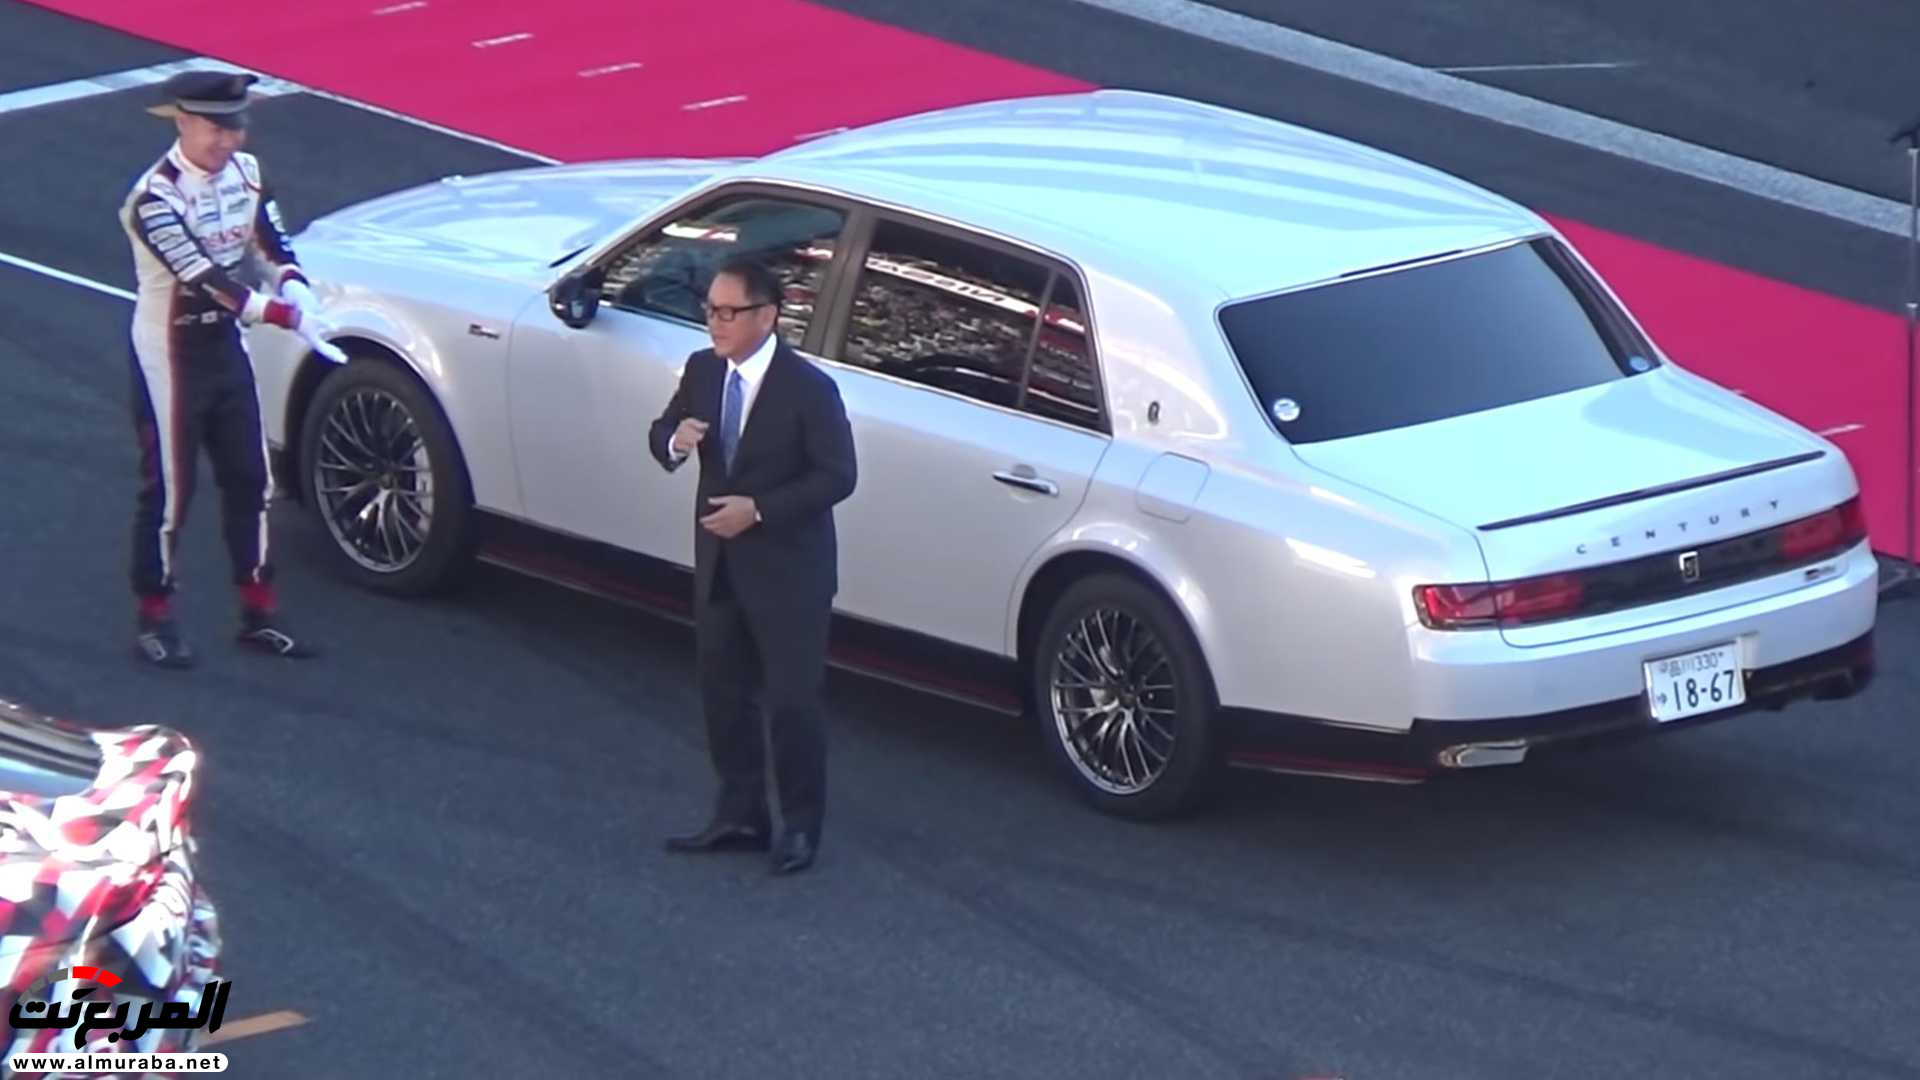 "بالفيديو" رئيس تويوتا يتباهى بسيارته الفاخرة على المضمار 2